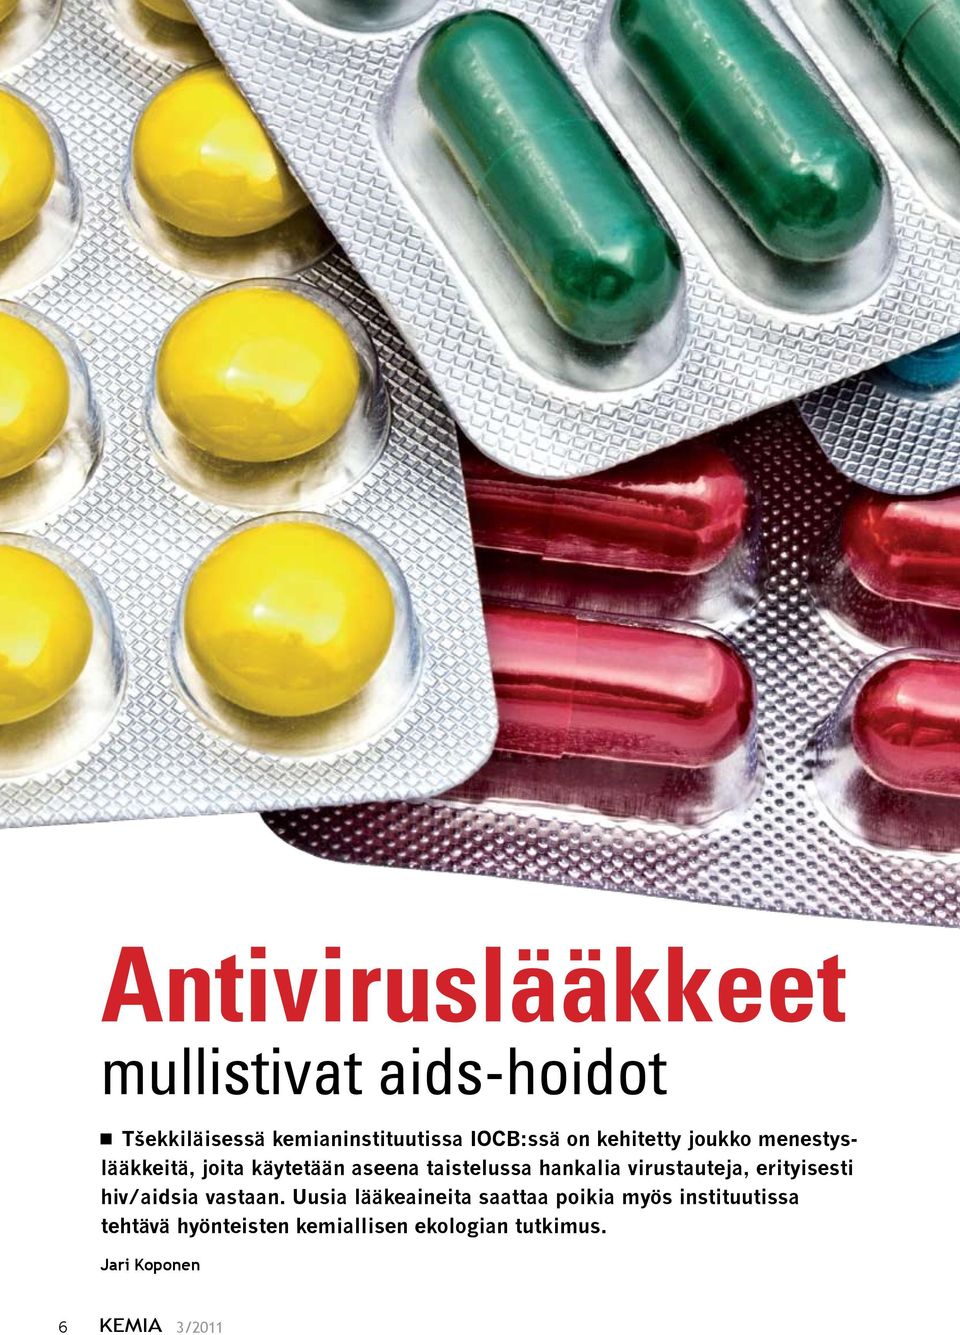 virustauteja, erityisesti hiv/aidsia vastaan.